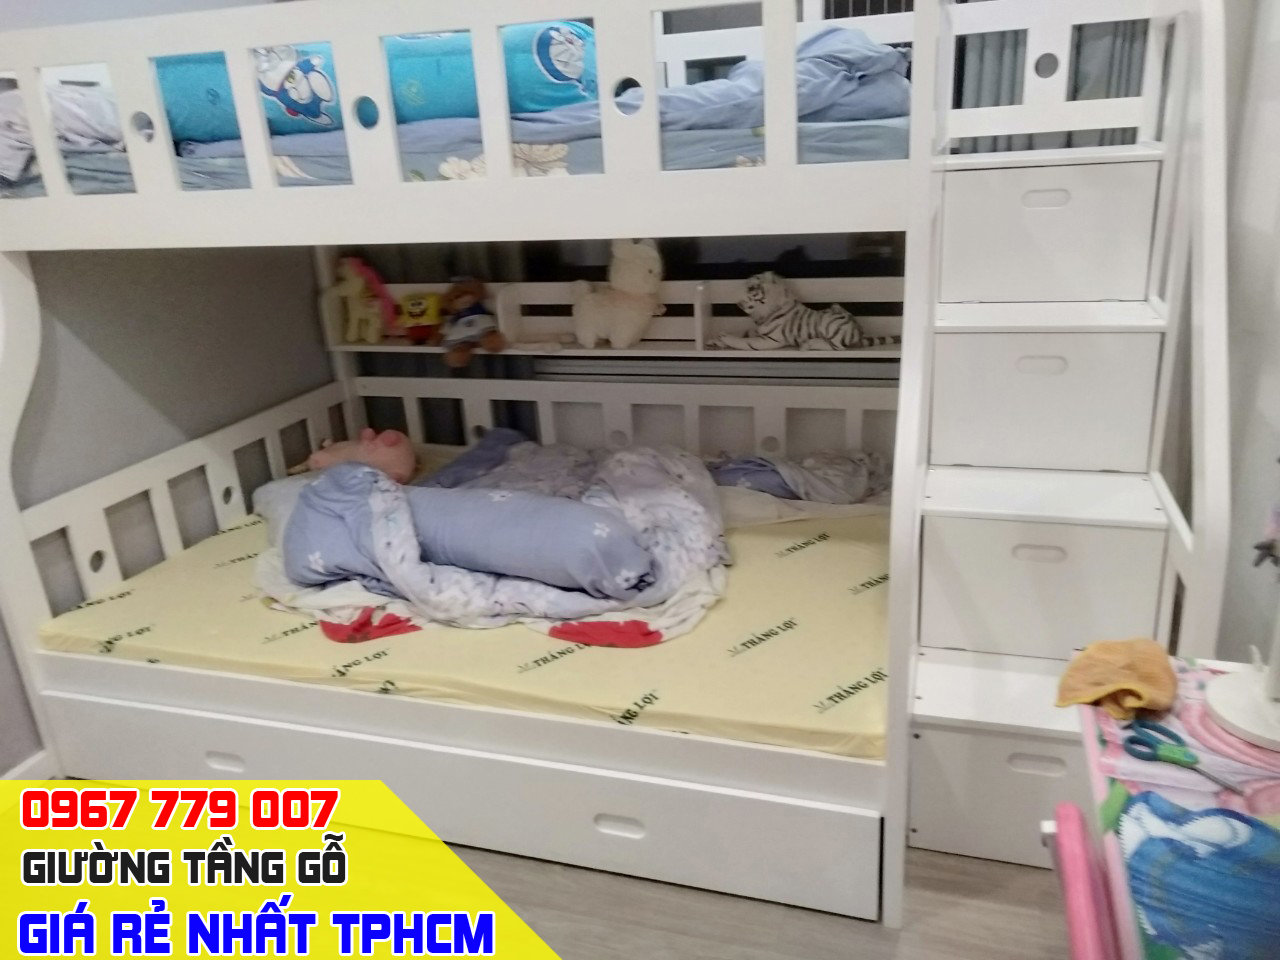 CH bán giường tầng trẻ em giá rẻ uy tín nhất Quận Gò Vấp TPHCM 17